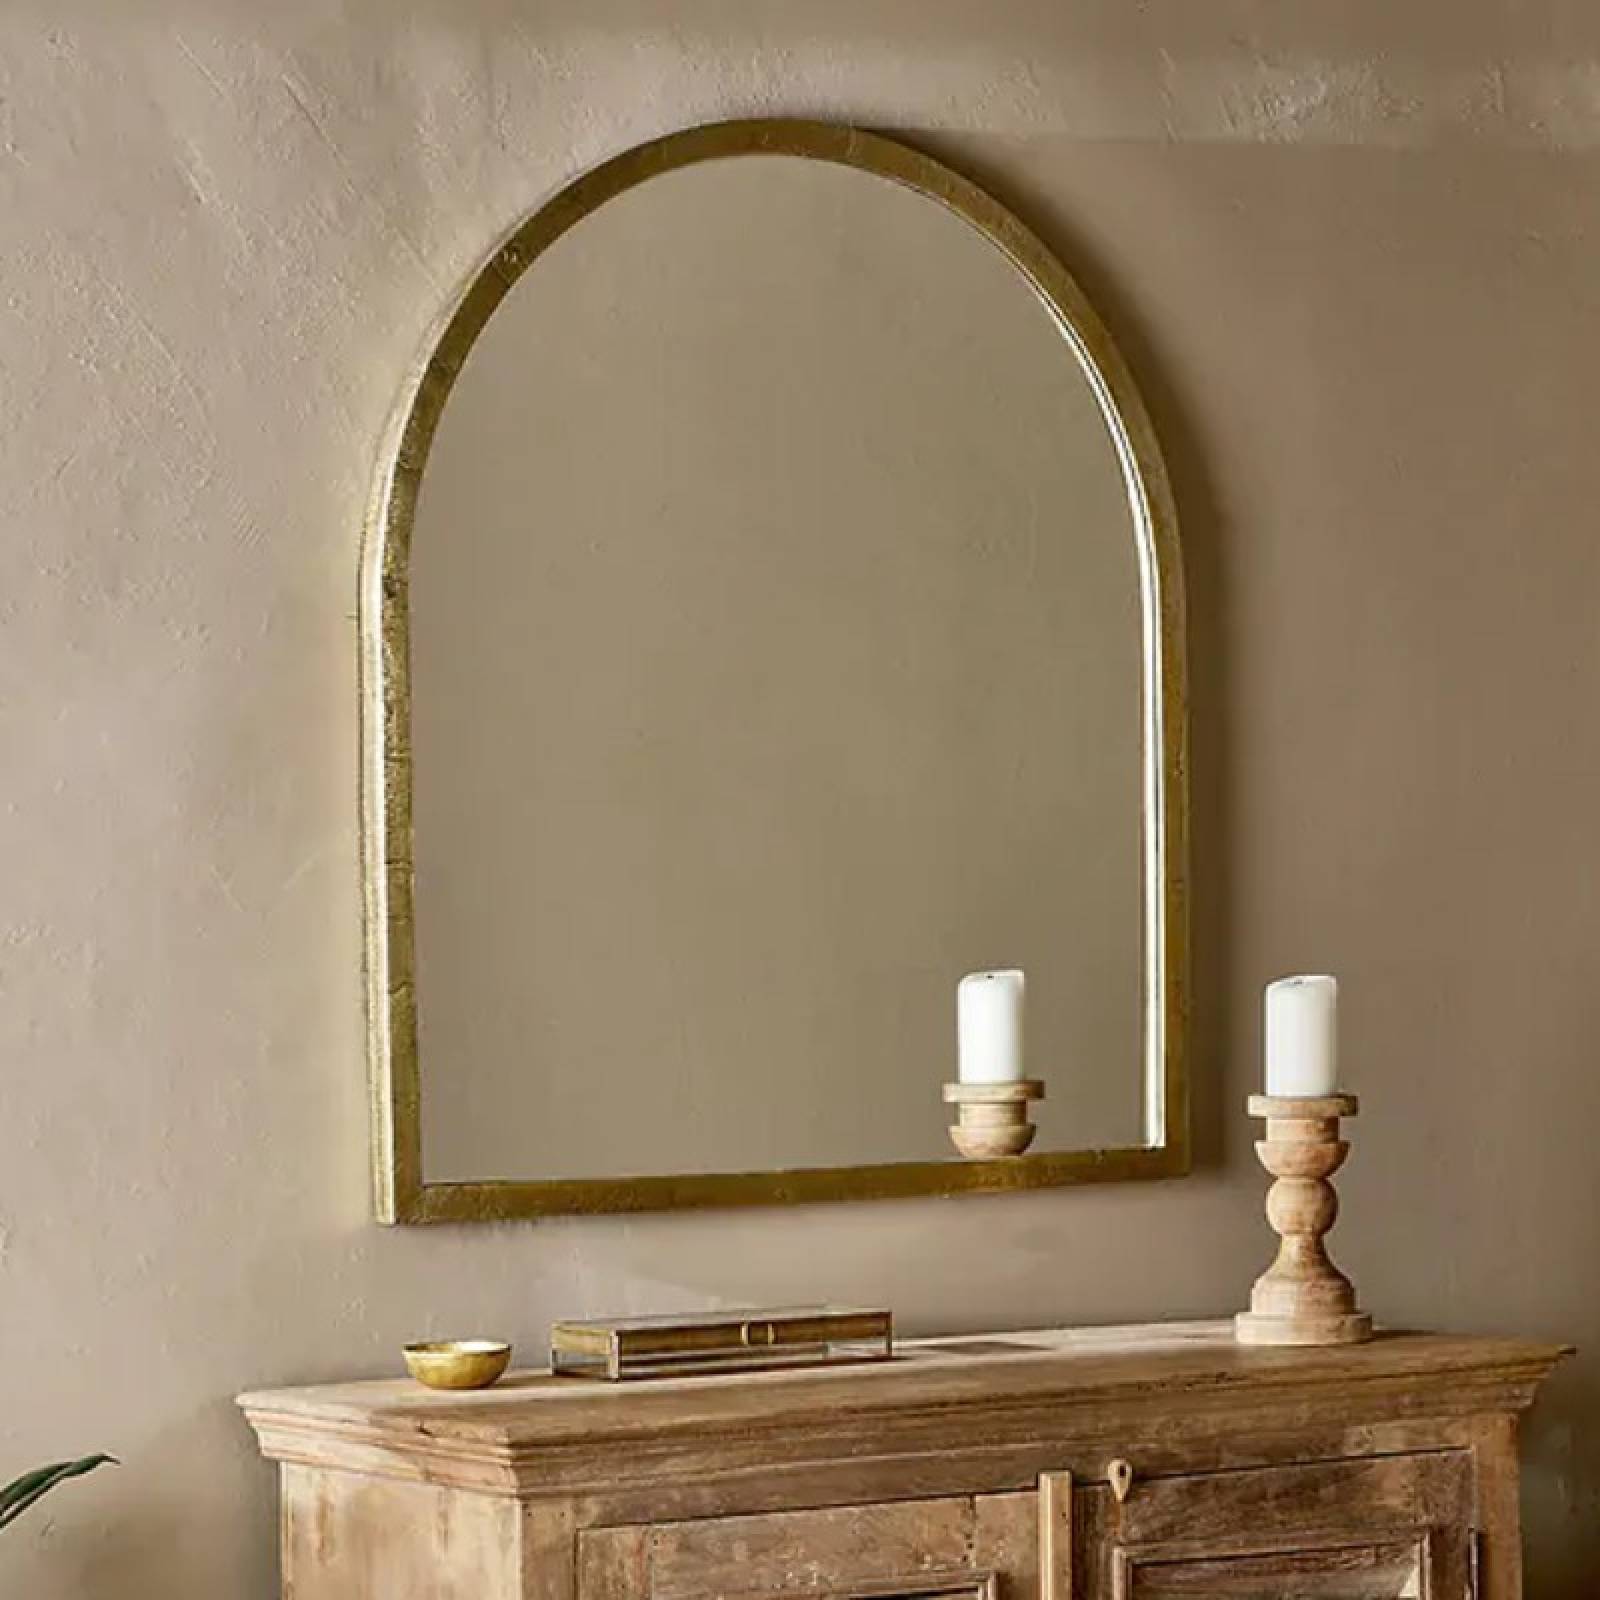 Murwara Arch Mirror In Antique Brass